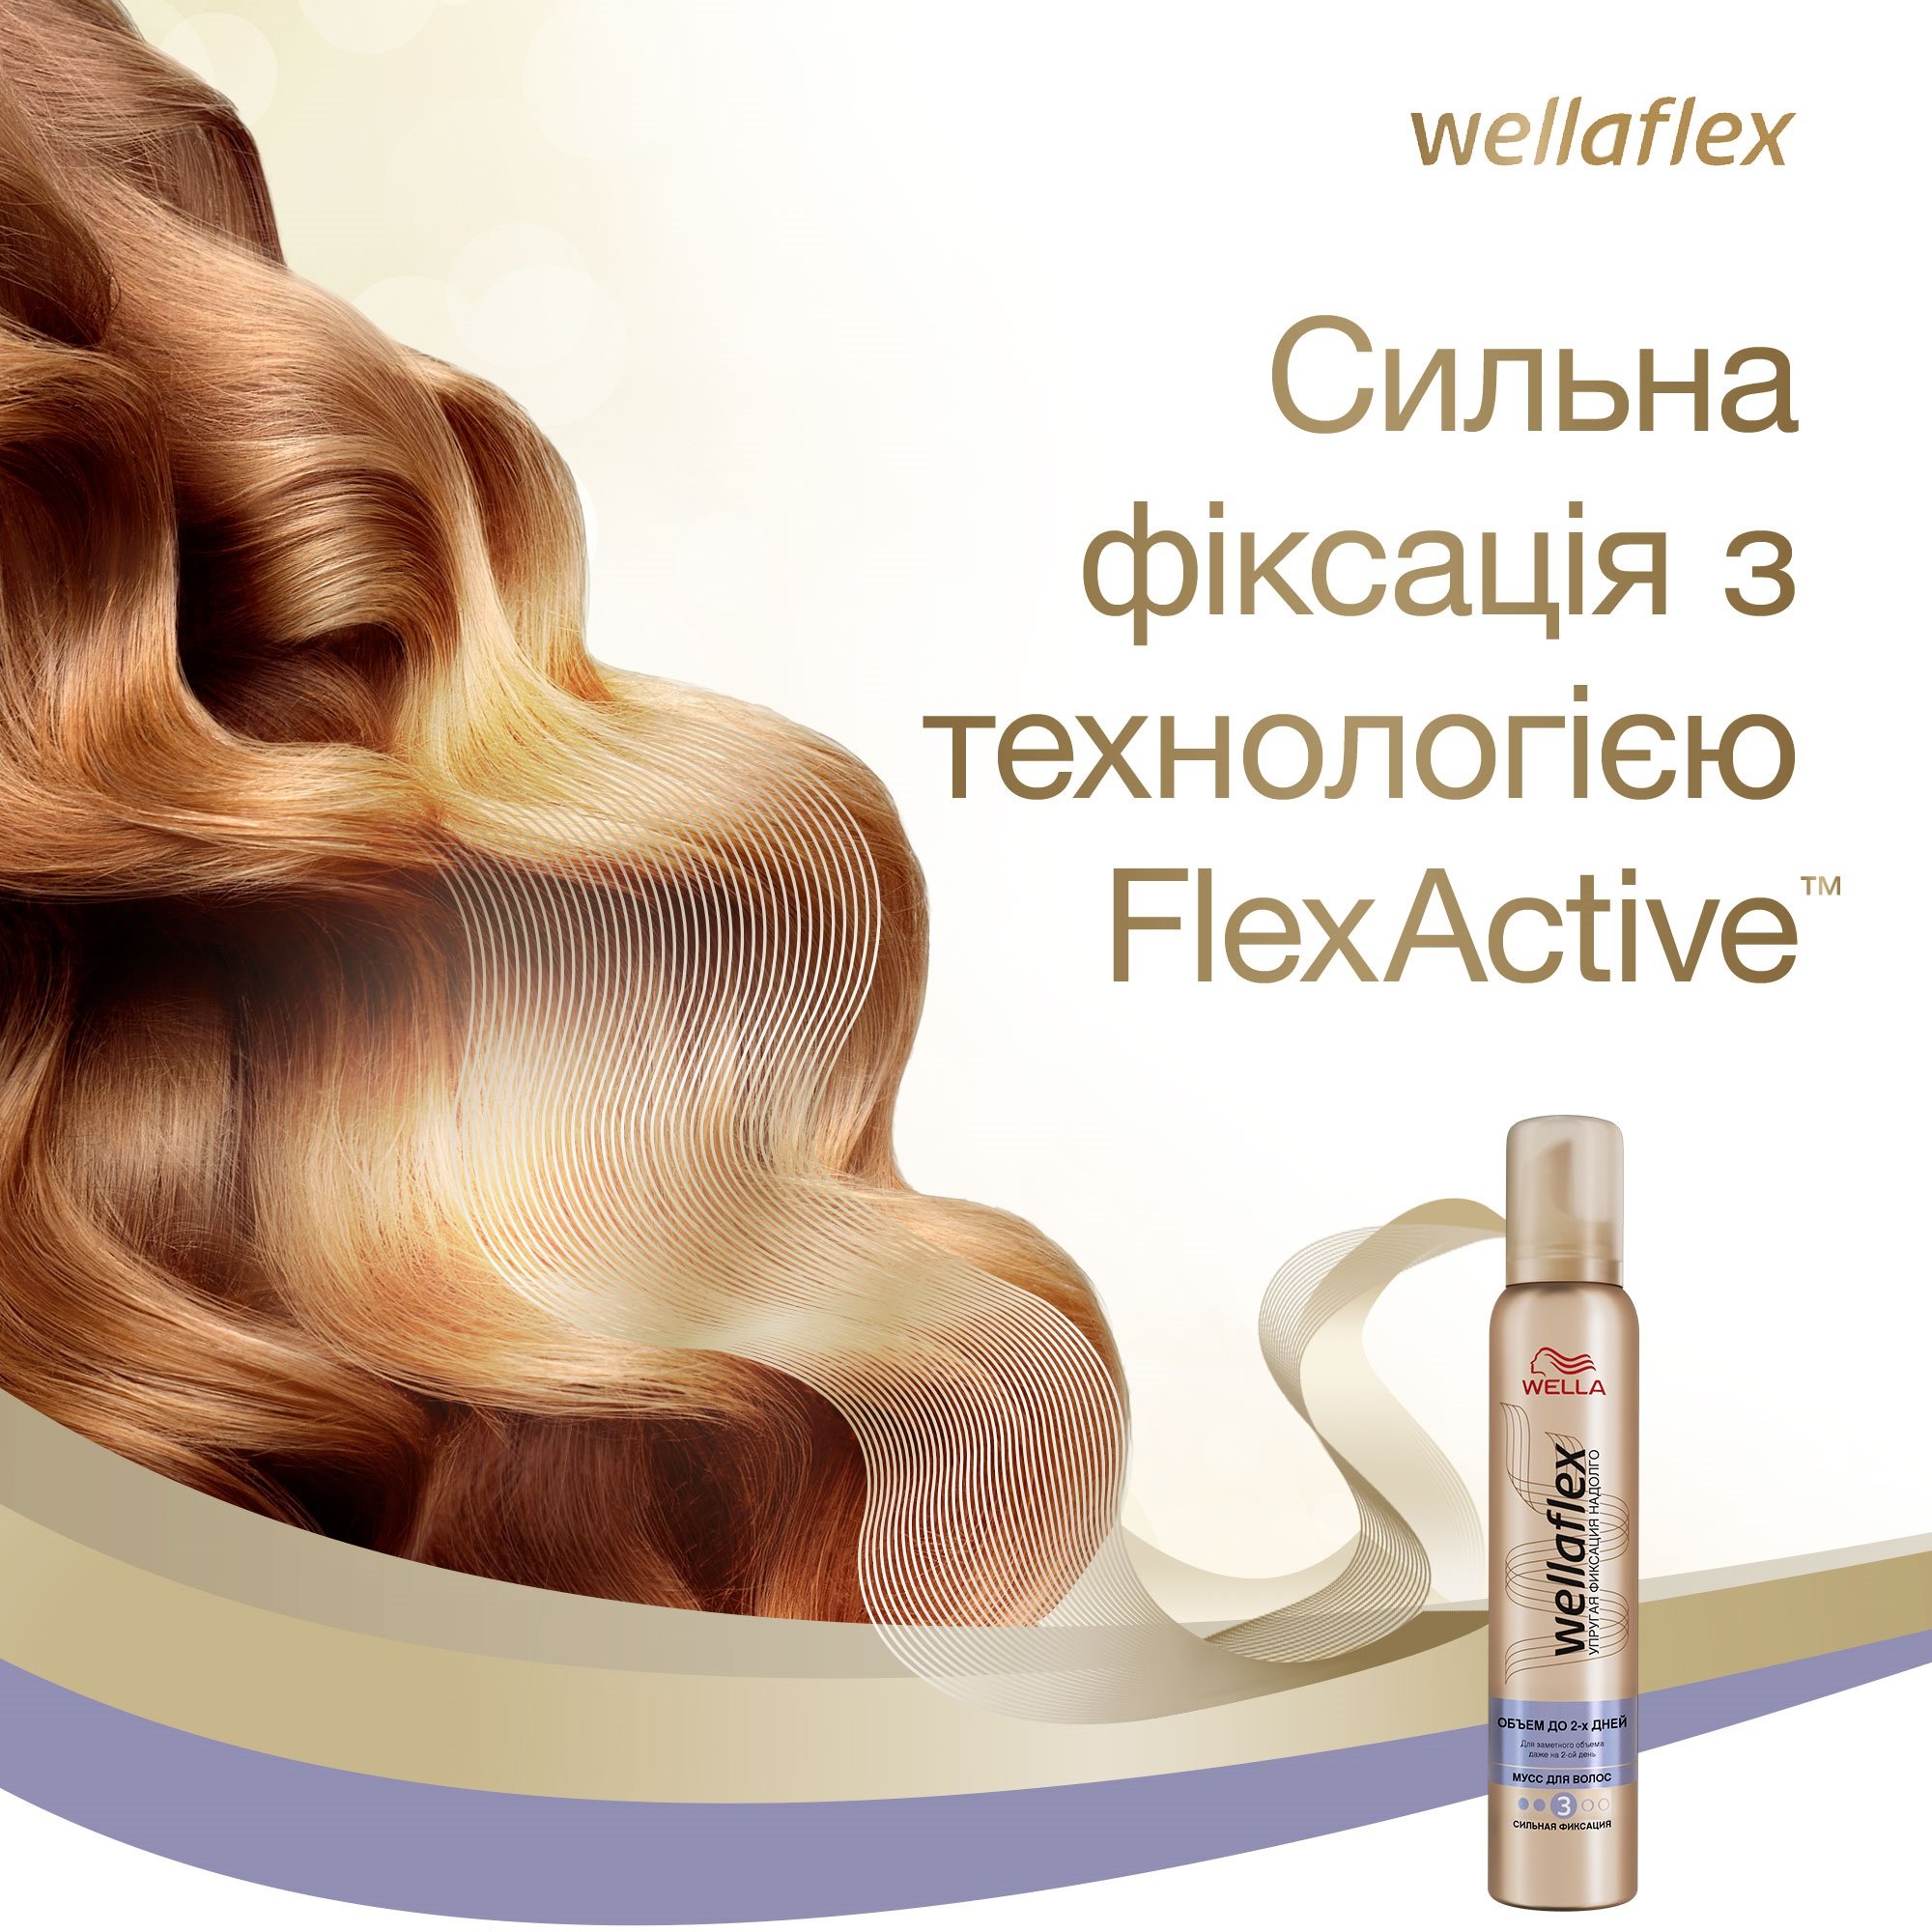 Мусс для волос Wellaflex Объем до 2 дней Сильной фиксации, 200 мл - фото 8